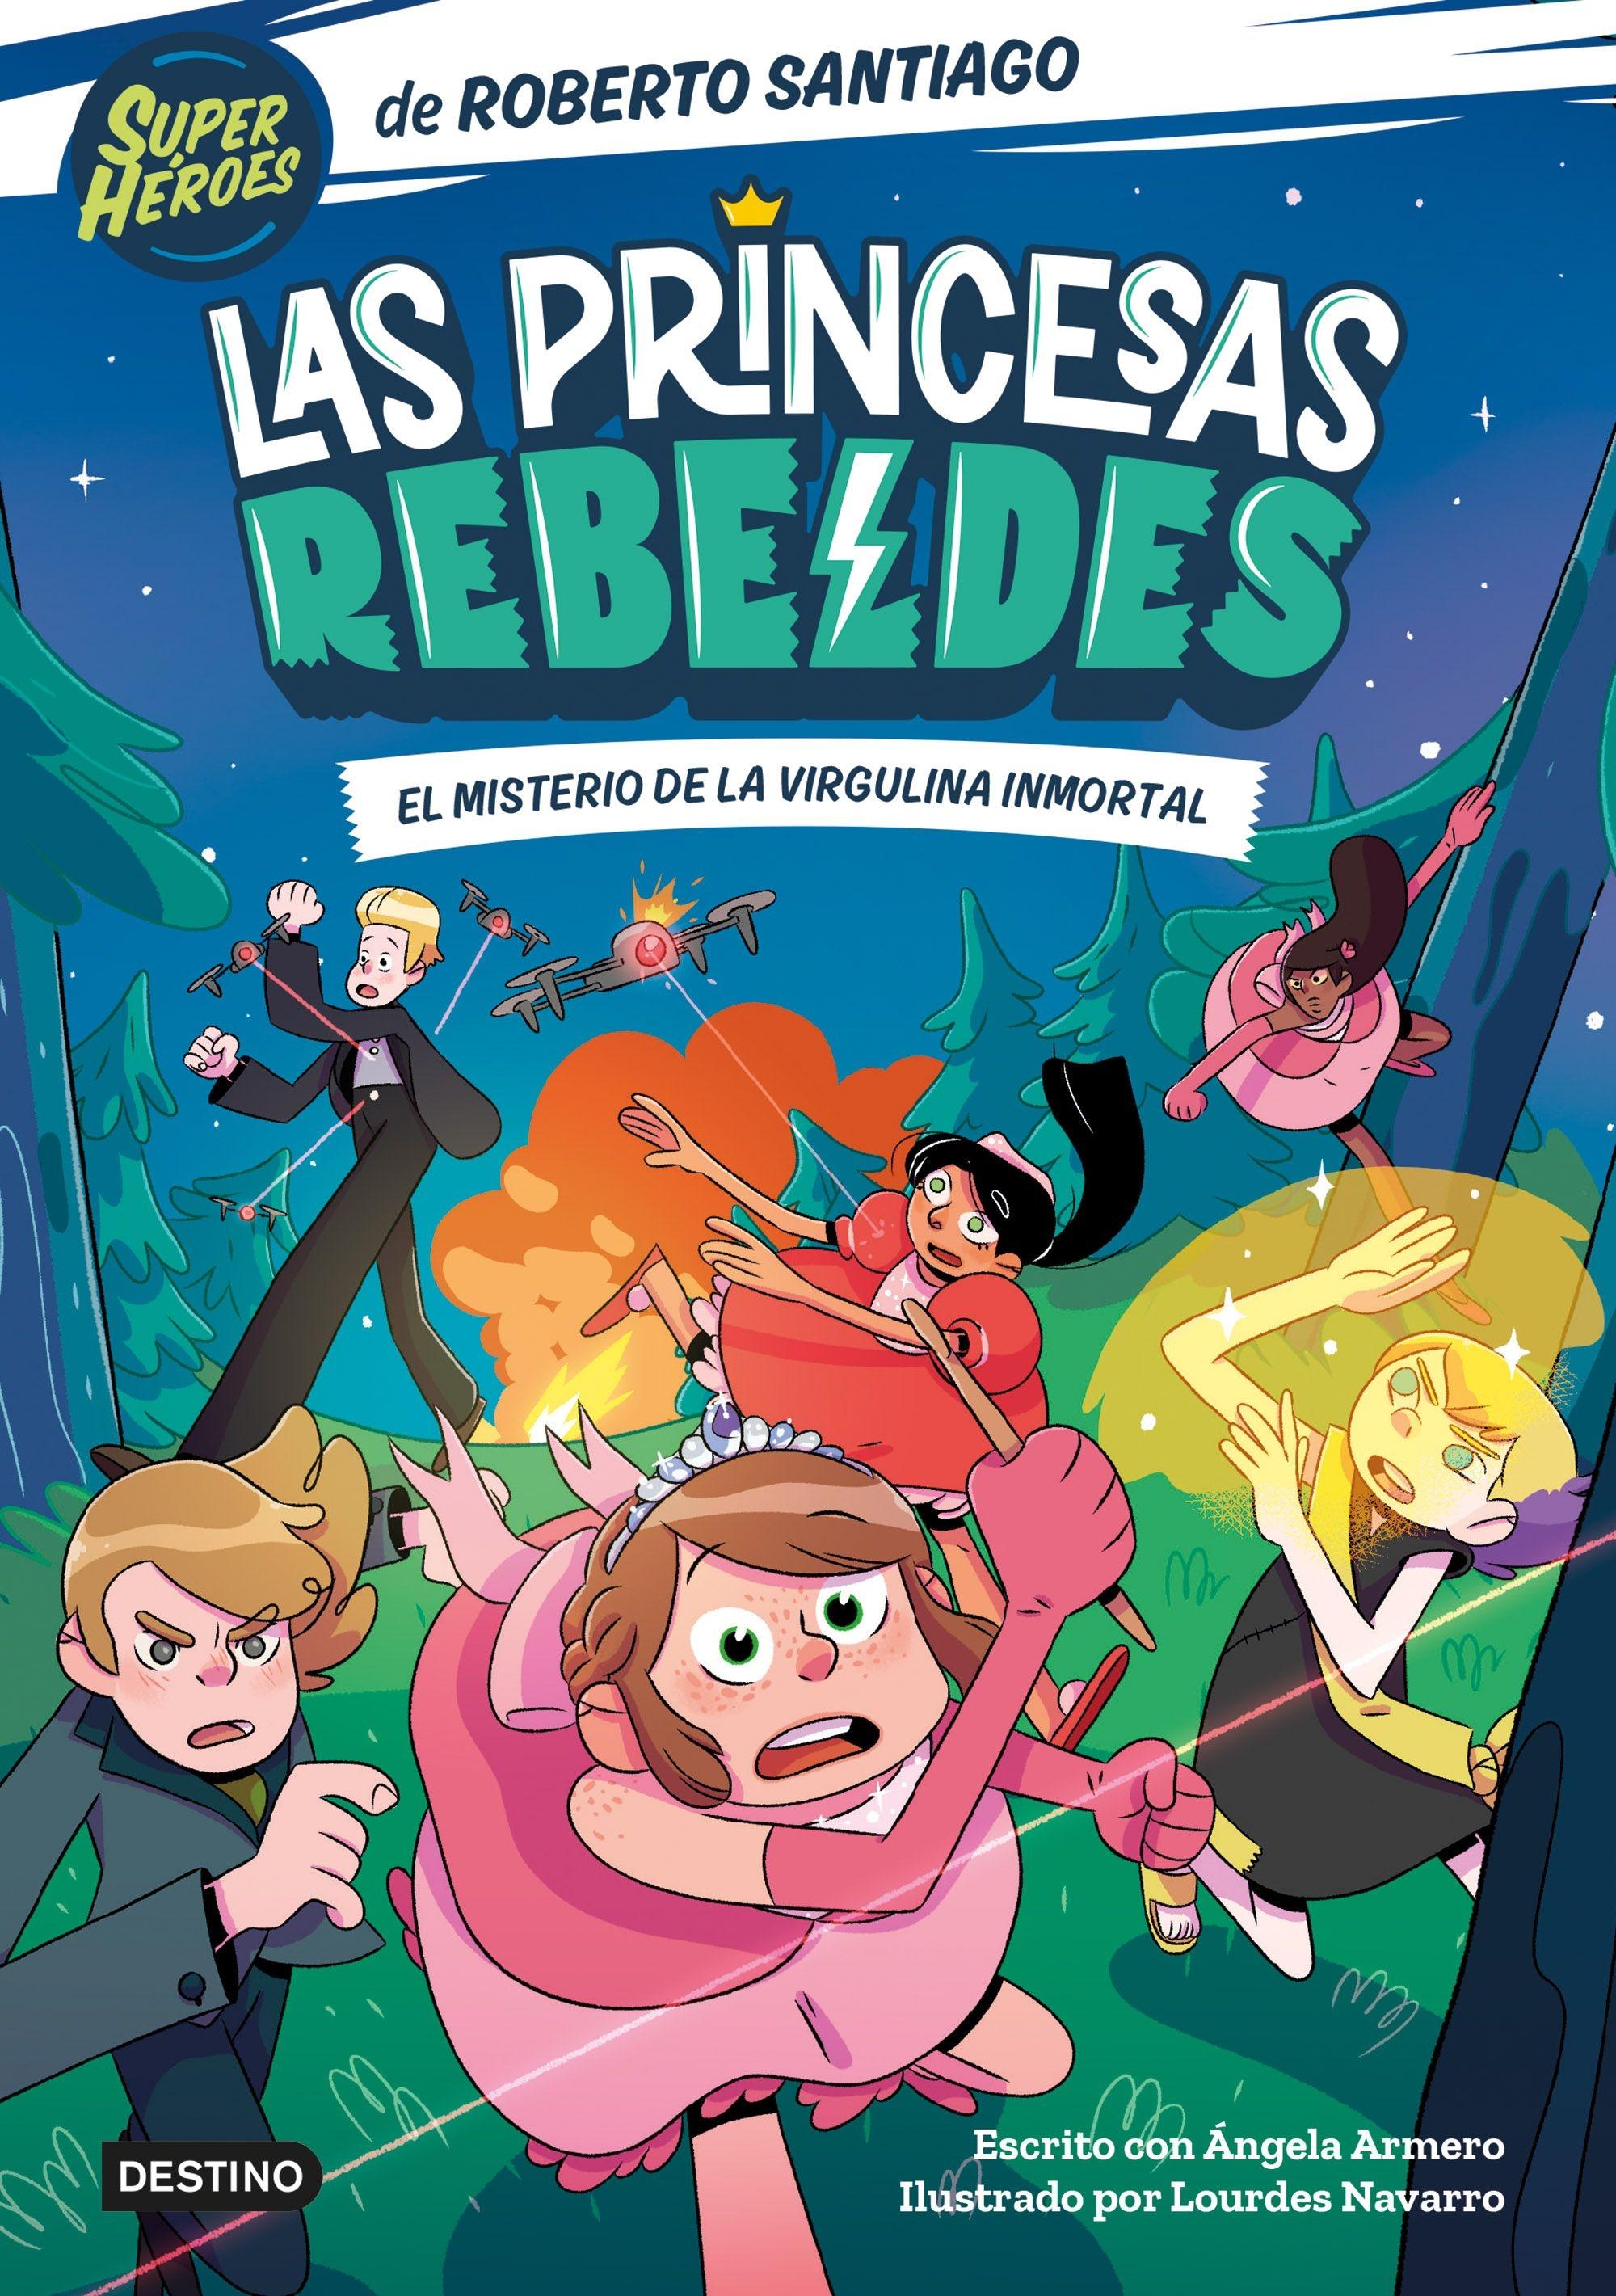 Misterio de la virgulina inmortal, El "Las Princesas Rebeldes 1"